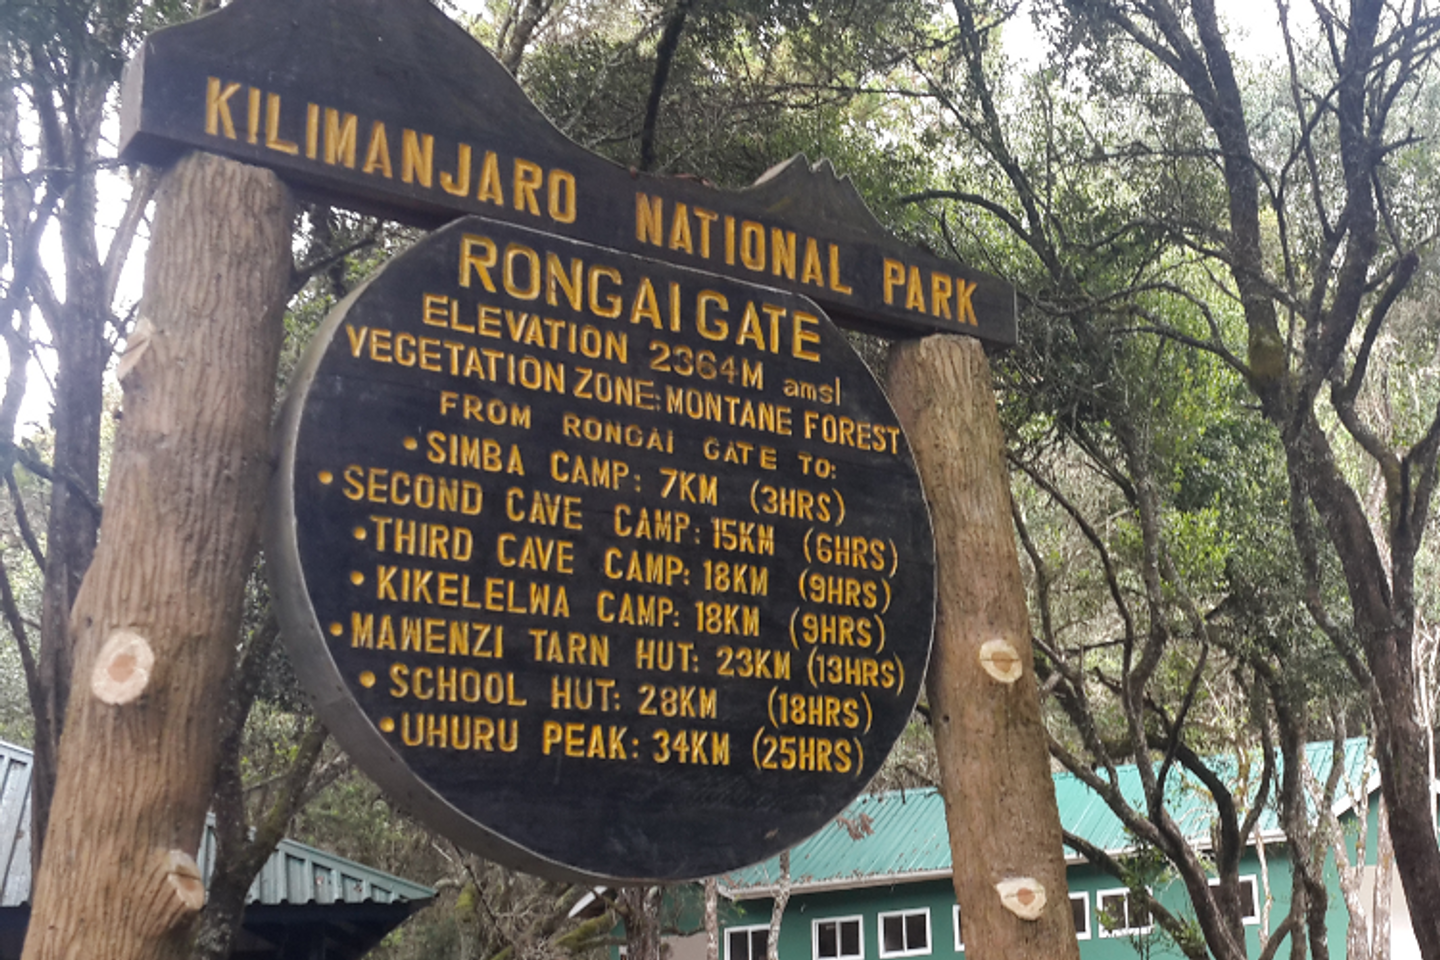 7 days Kilimanjaro Rongai Route hiking Royal Trip package